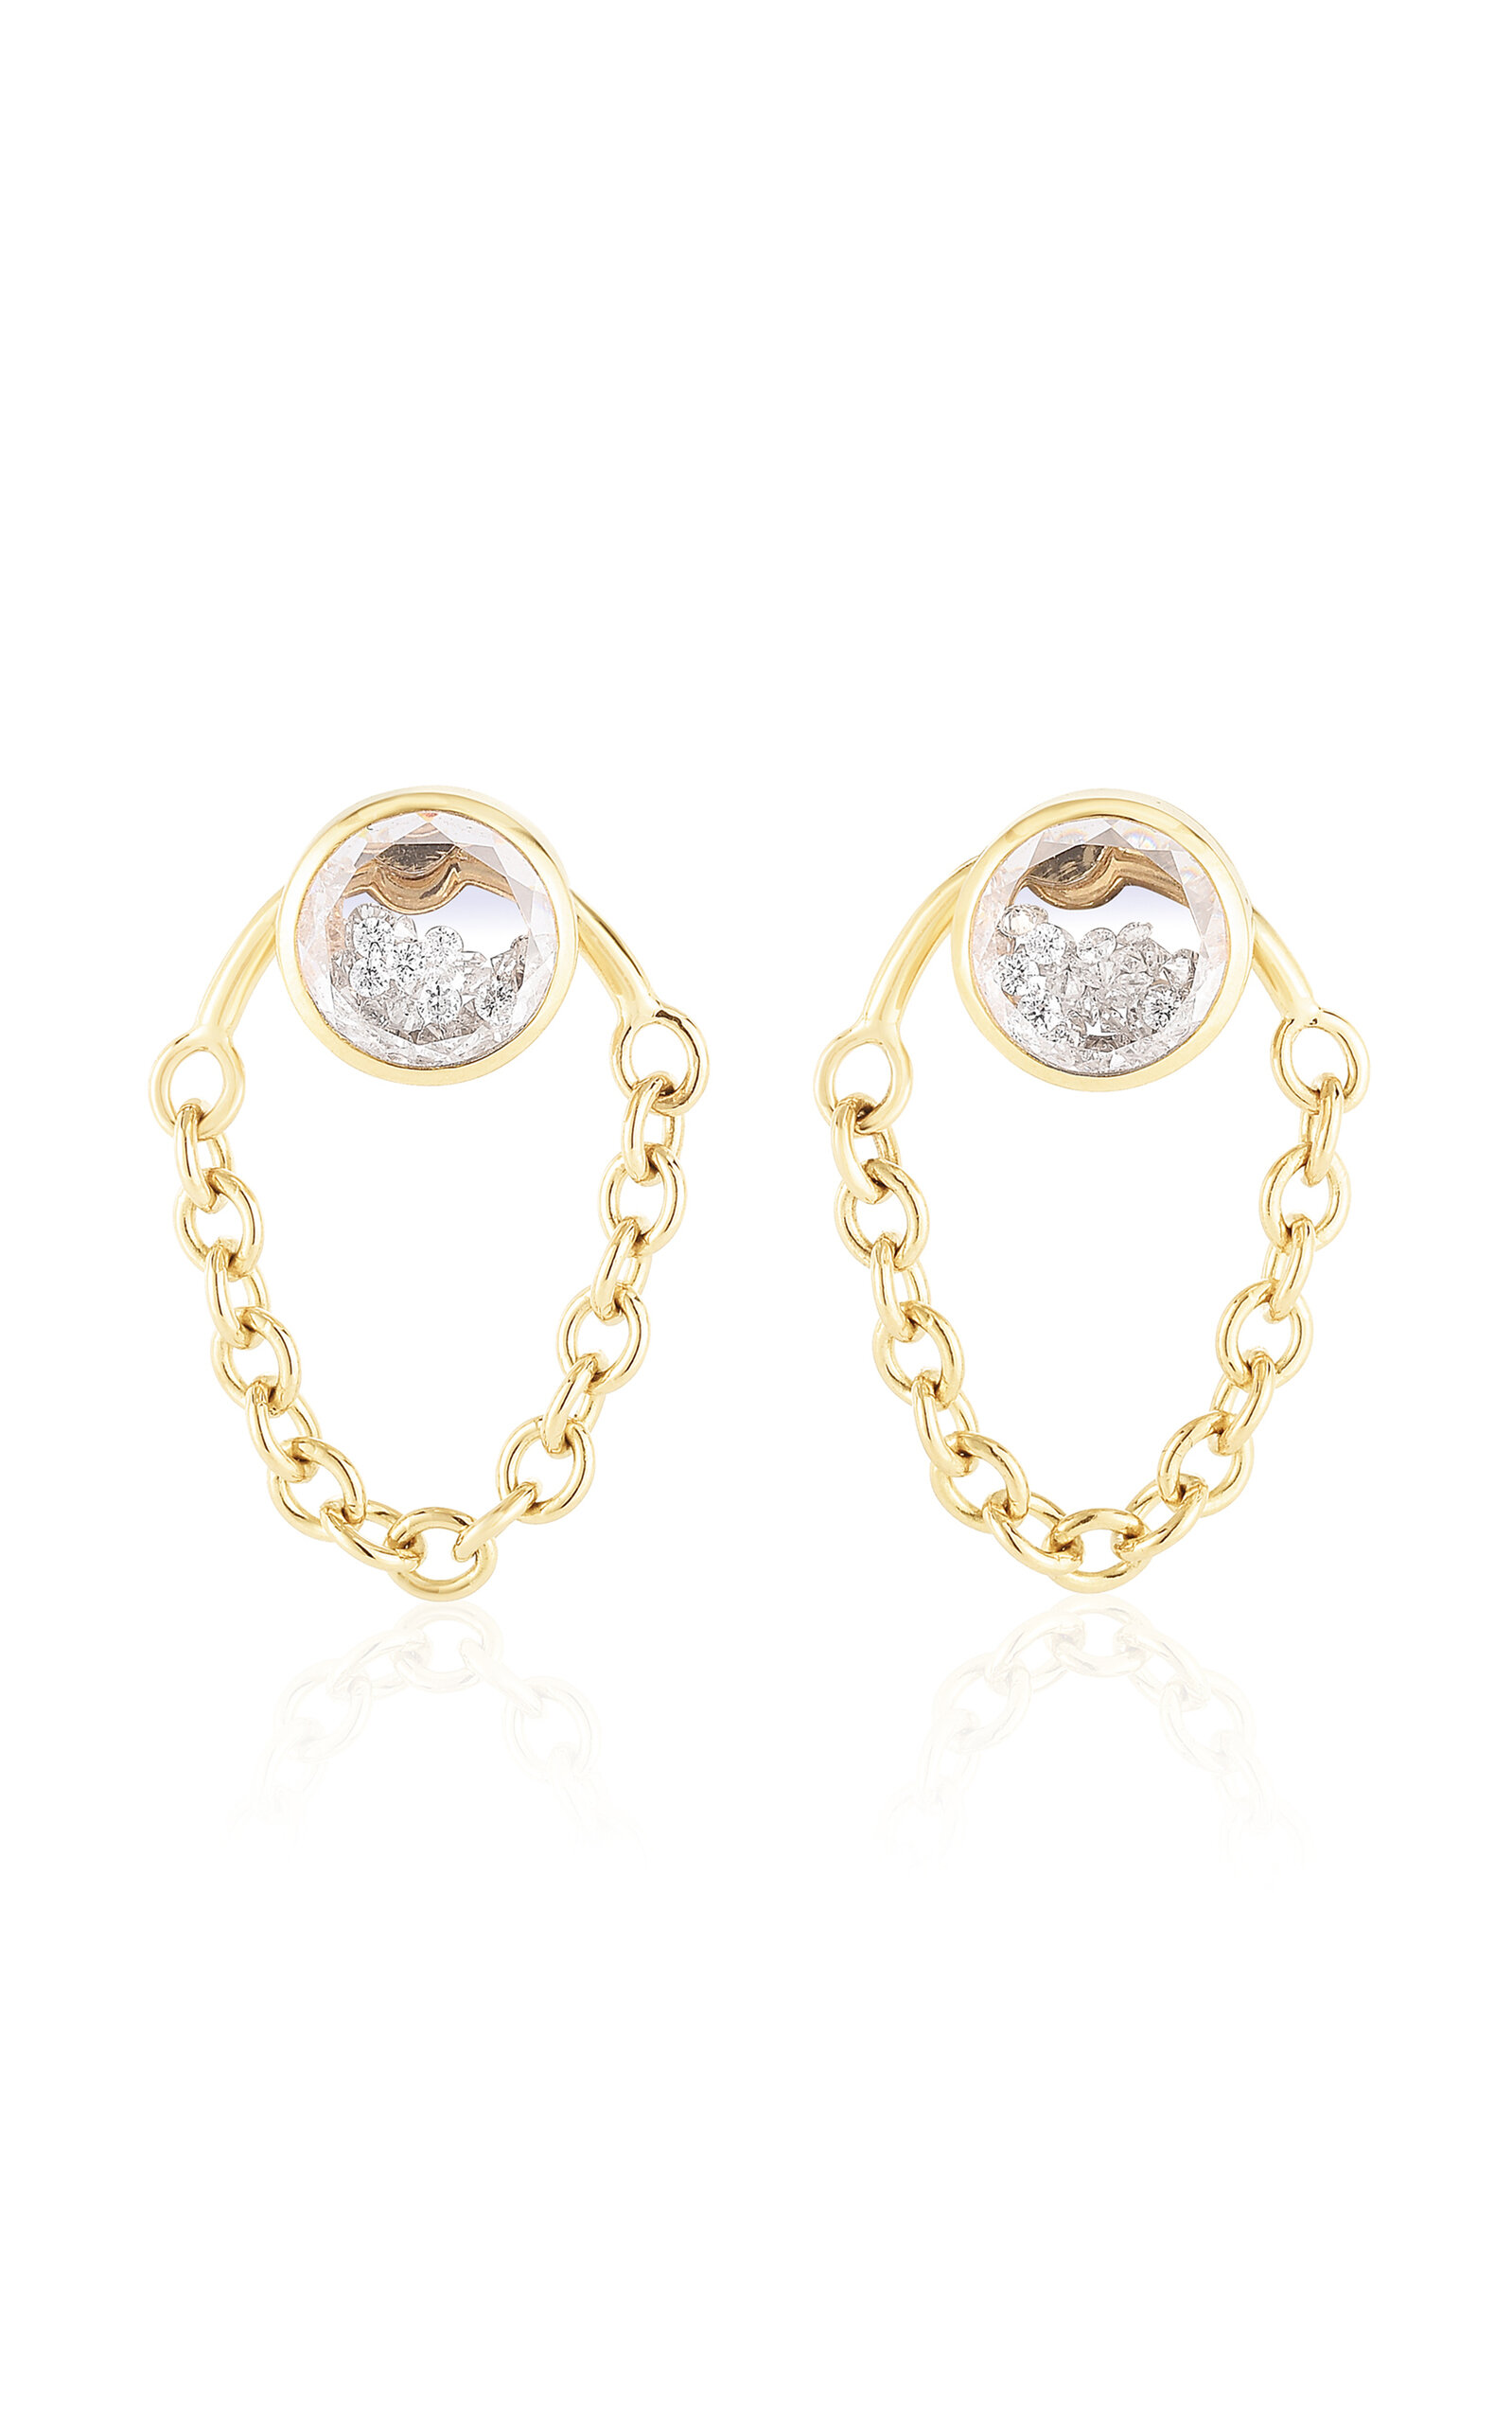 Moritz Glik 18k Gold Bamba Shaker Diamond Earrings